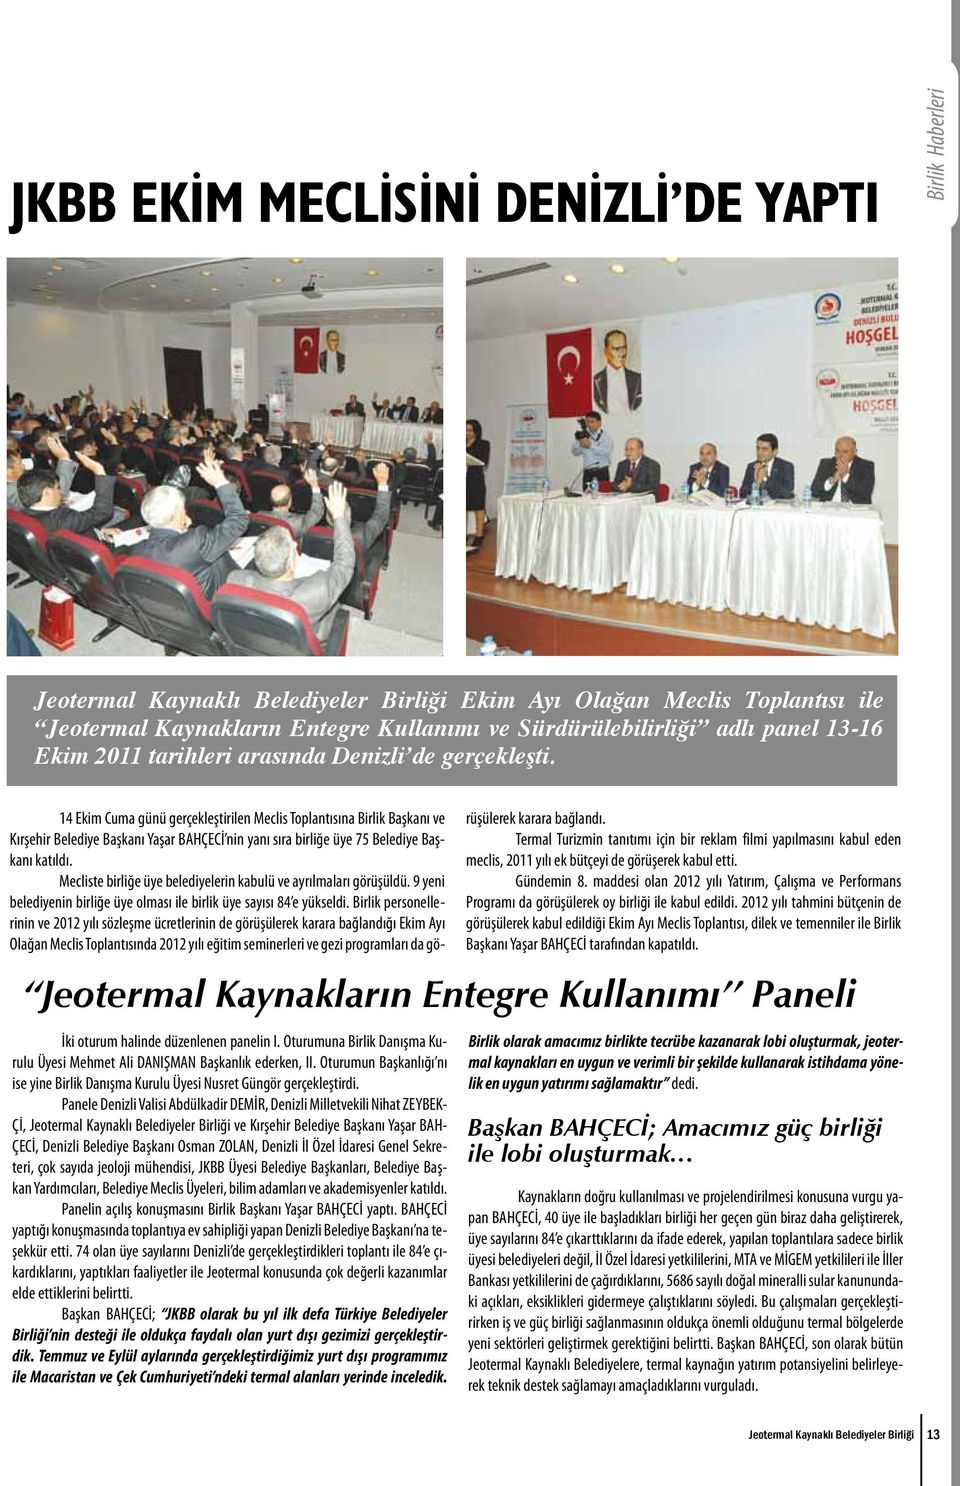 14 Ekim Cuma günü gerçekleştirilen Meclis Toplantısına Birlik Başkanı ve Kırşehir Belediye Başkanı Yaşar BAHÇECİ nin yanı sıra birliğe üye 75 Belediye Başkanı katıldı.